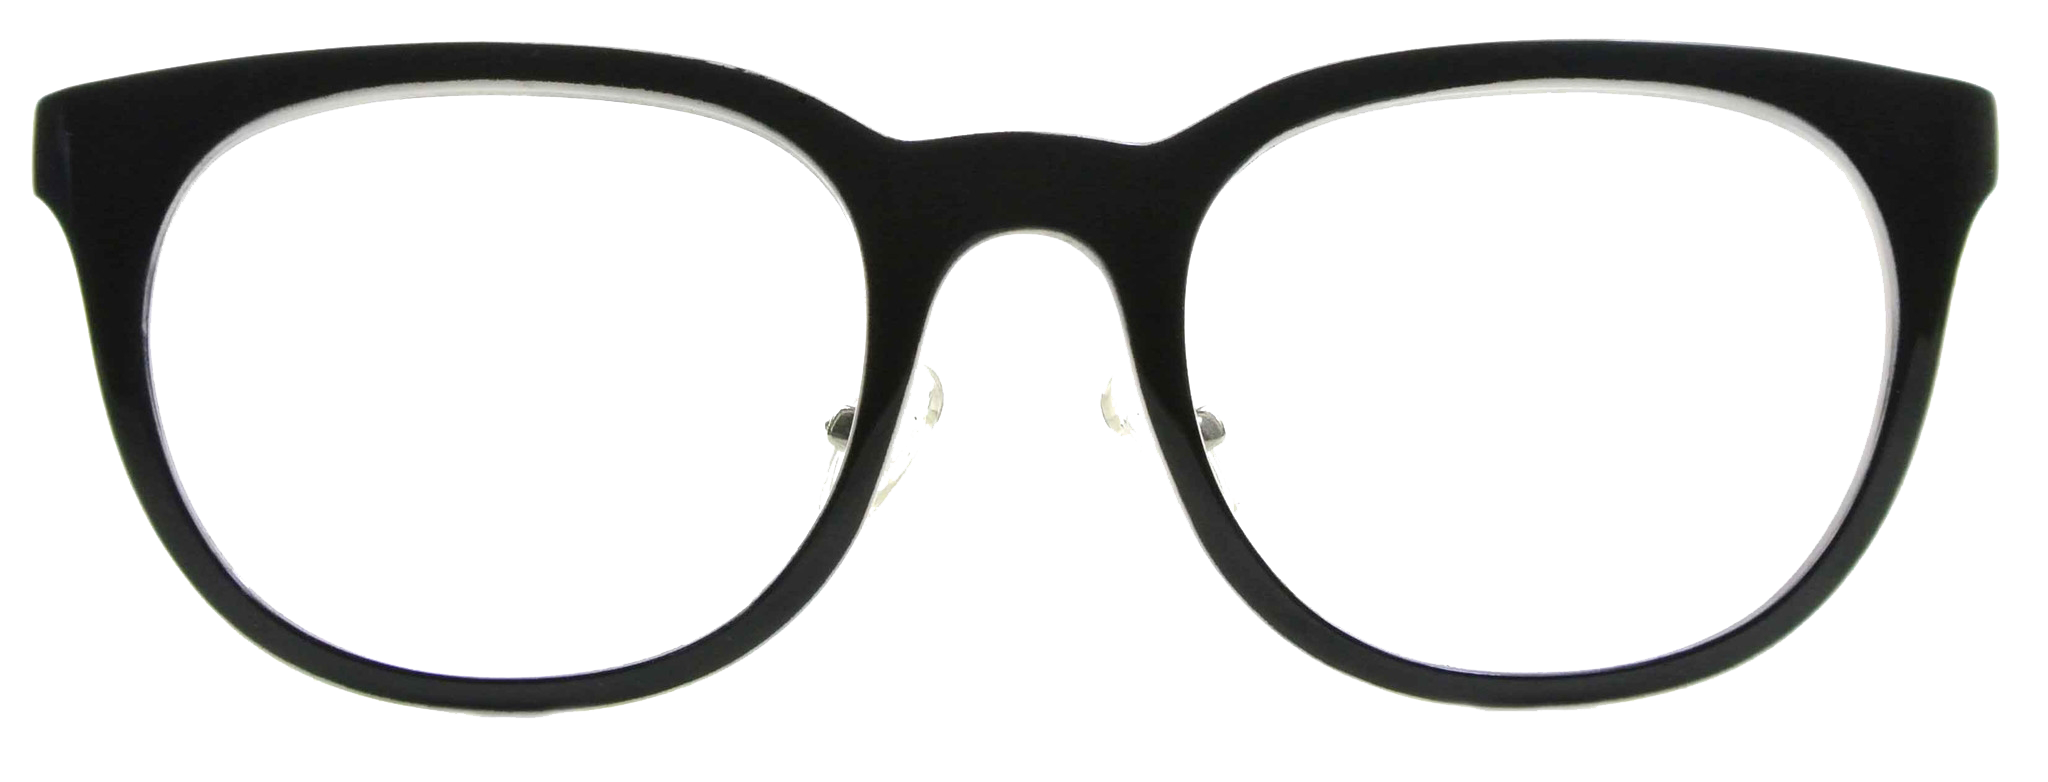 Sunglasses eyeglass prescription clip. Goggles clipart brown glass